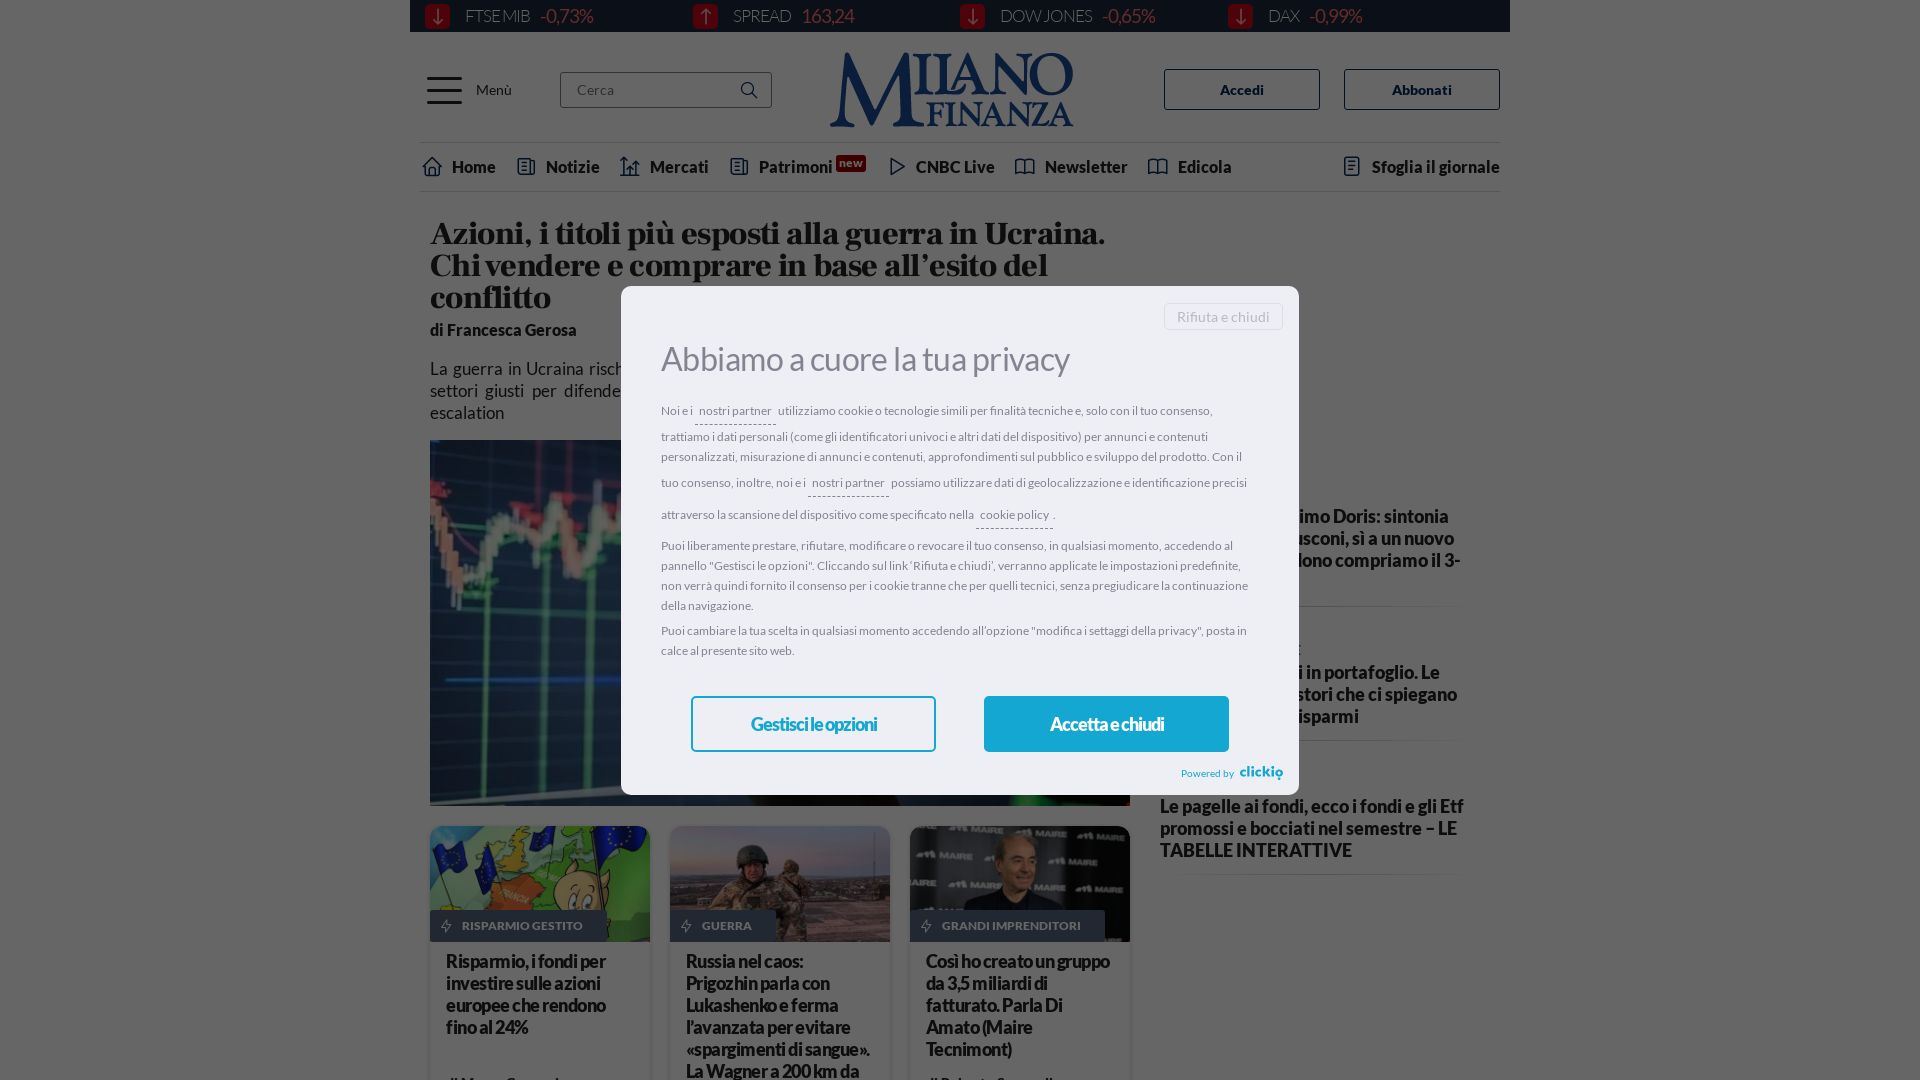 Website status milanofinanza.it is   ONLINE